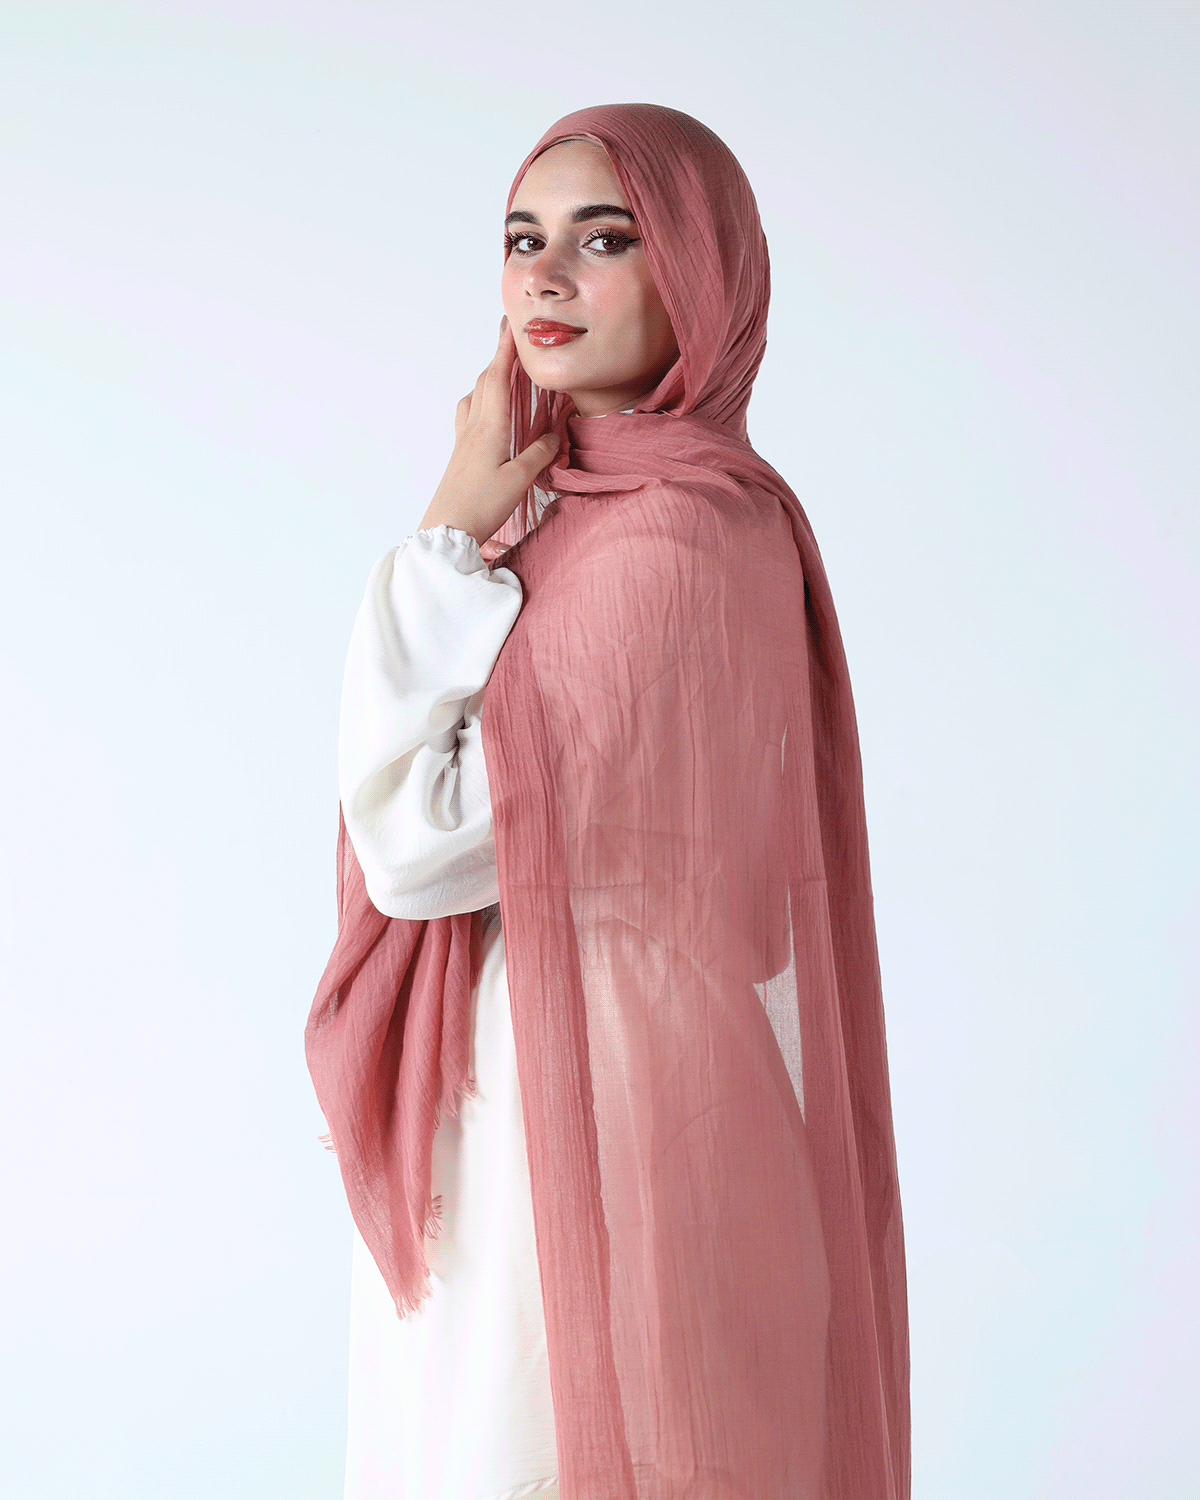 hejab fashion photography photographer Photography  photoshoot Fashion  scarf hijab modest model